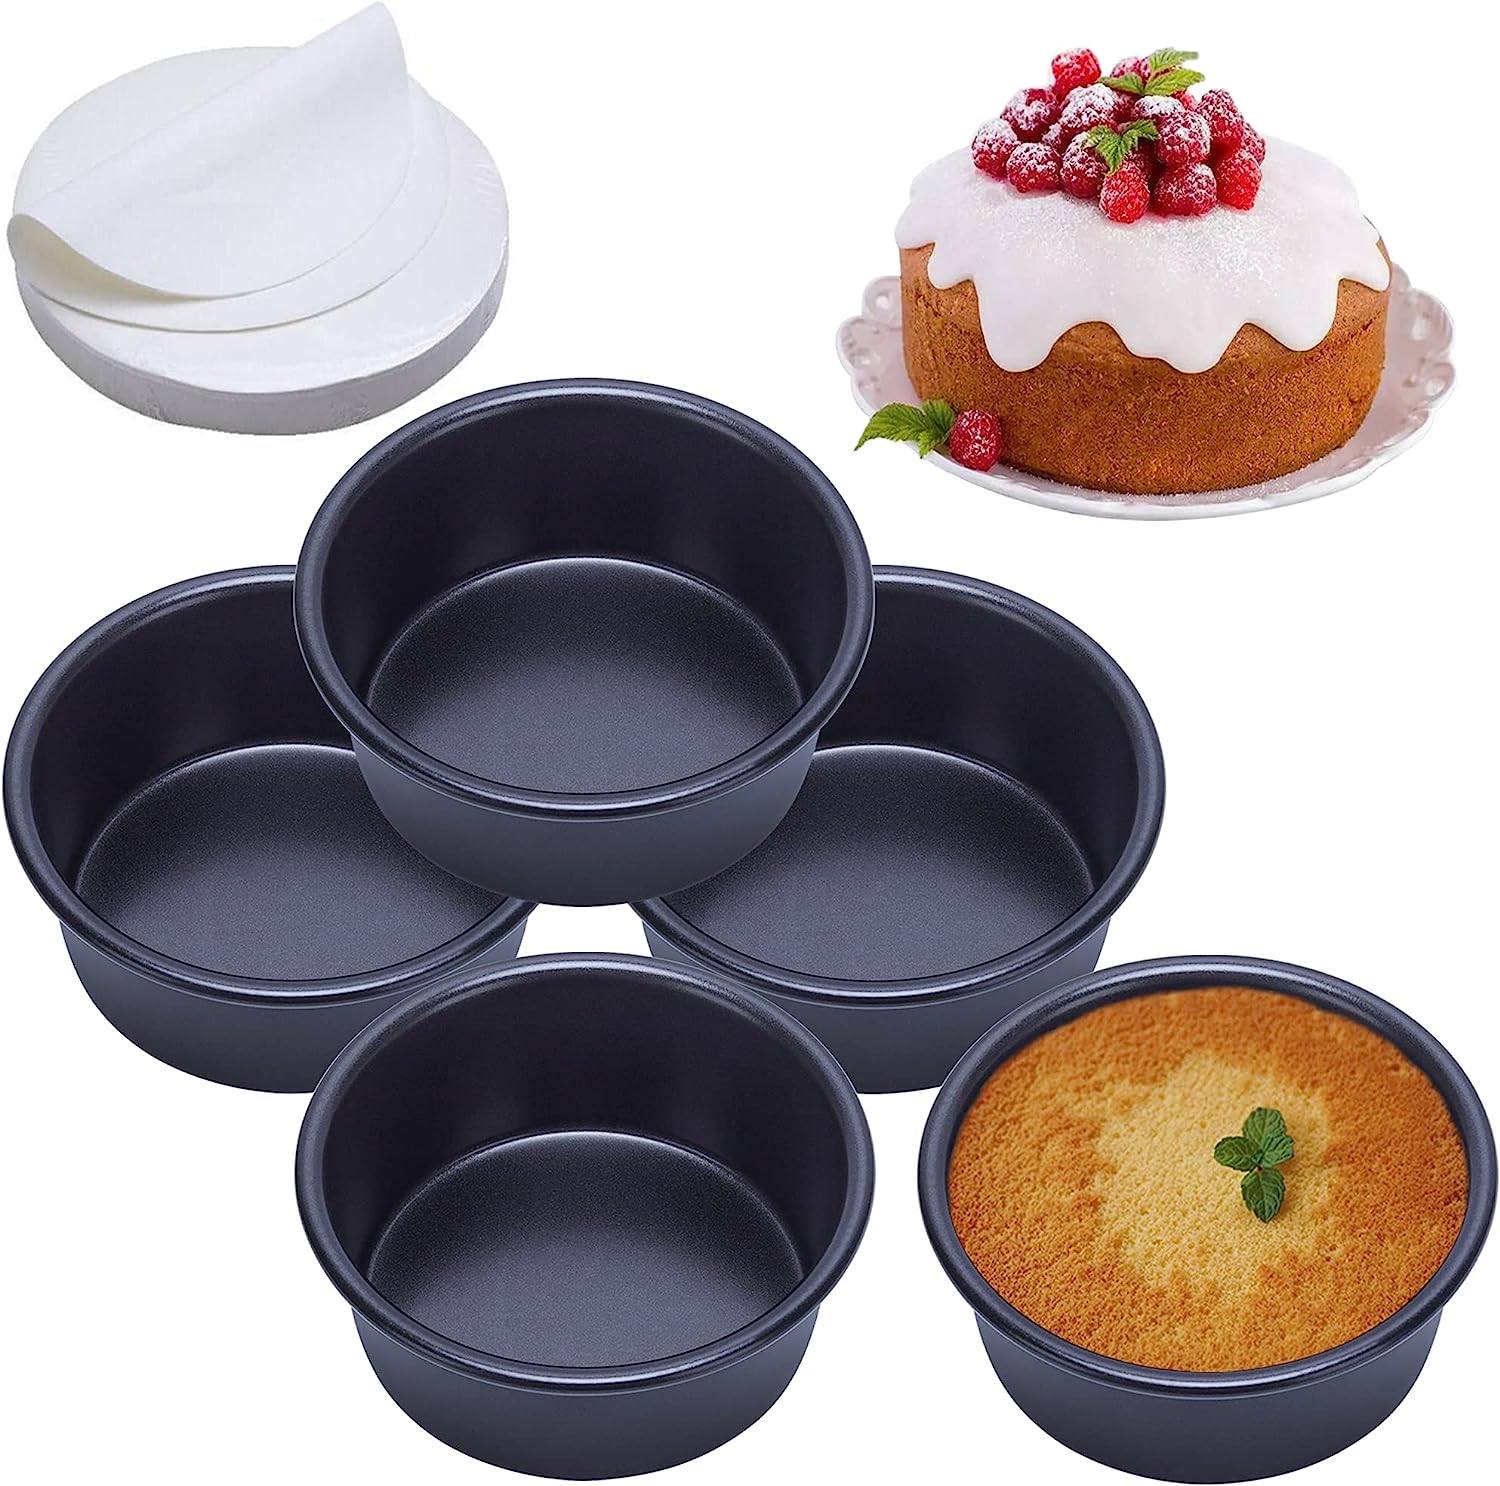 4 Inch Cake Pan Set of 5, Nonstick Round Cake Pans [...]